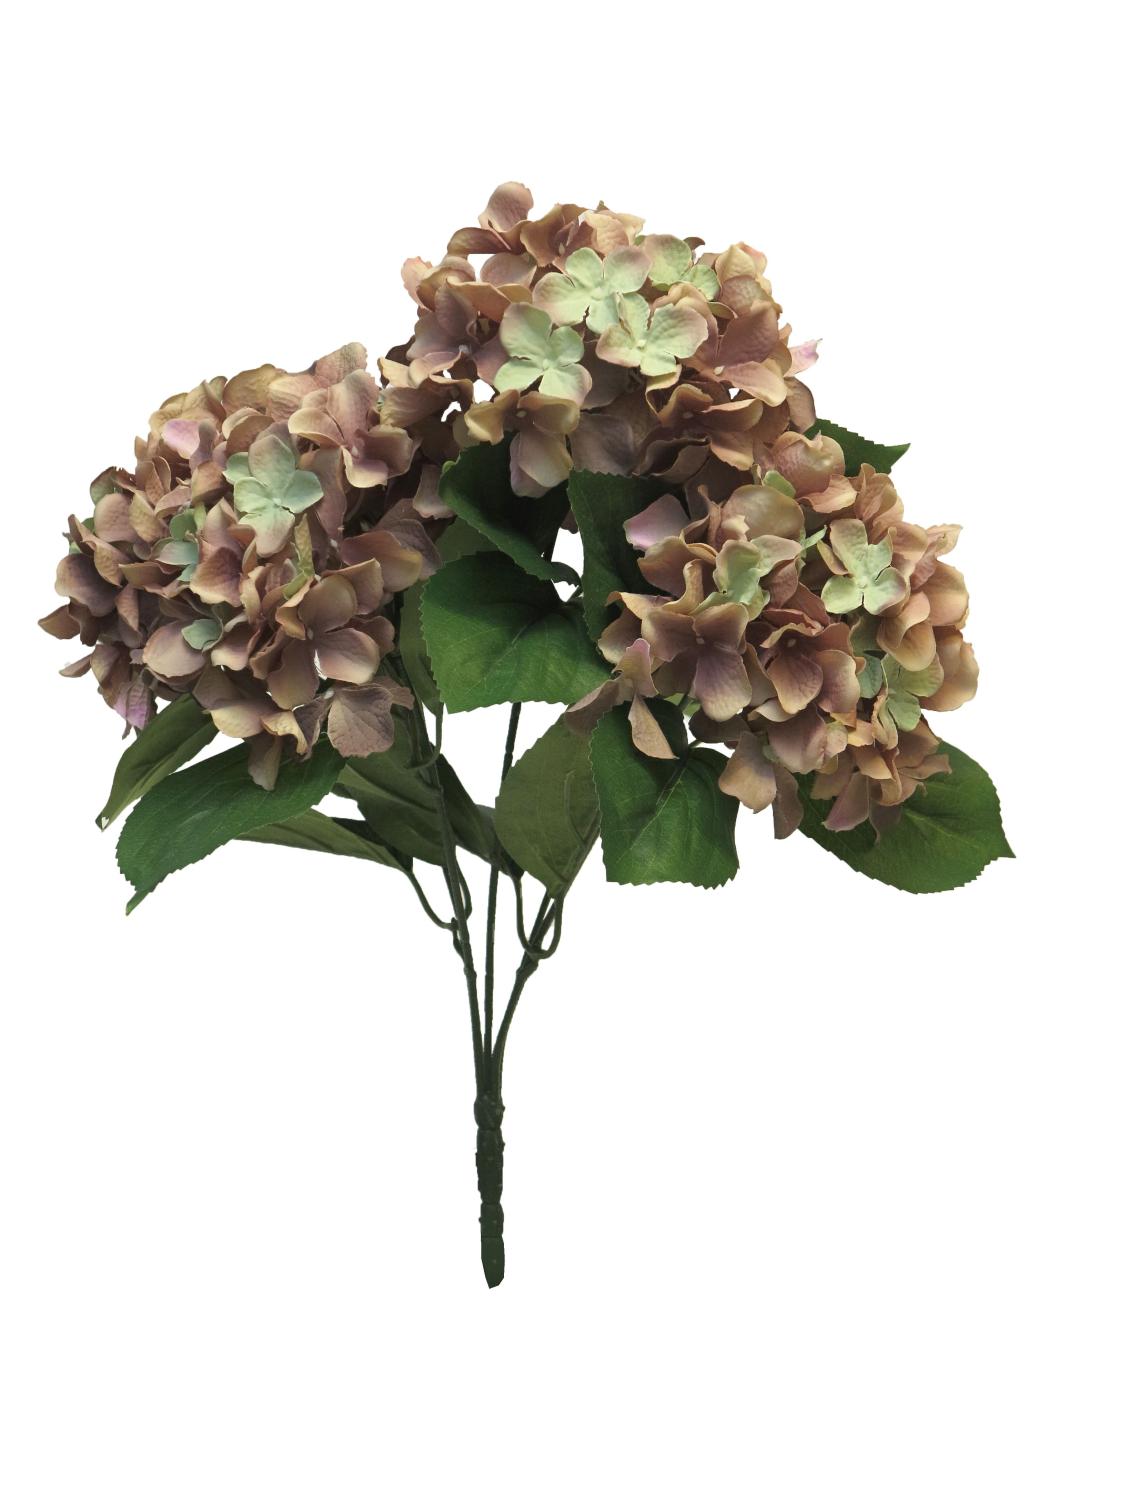 braun-grün, Blume Künstliche Steckstab, LINJIA Hortensie 45cm auf